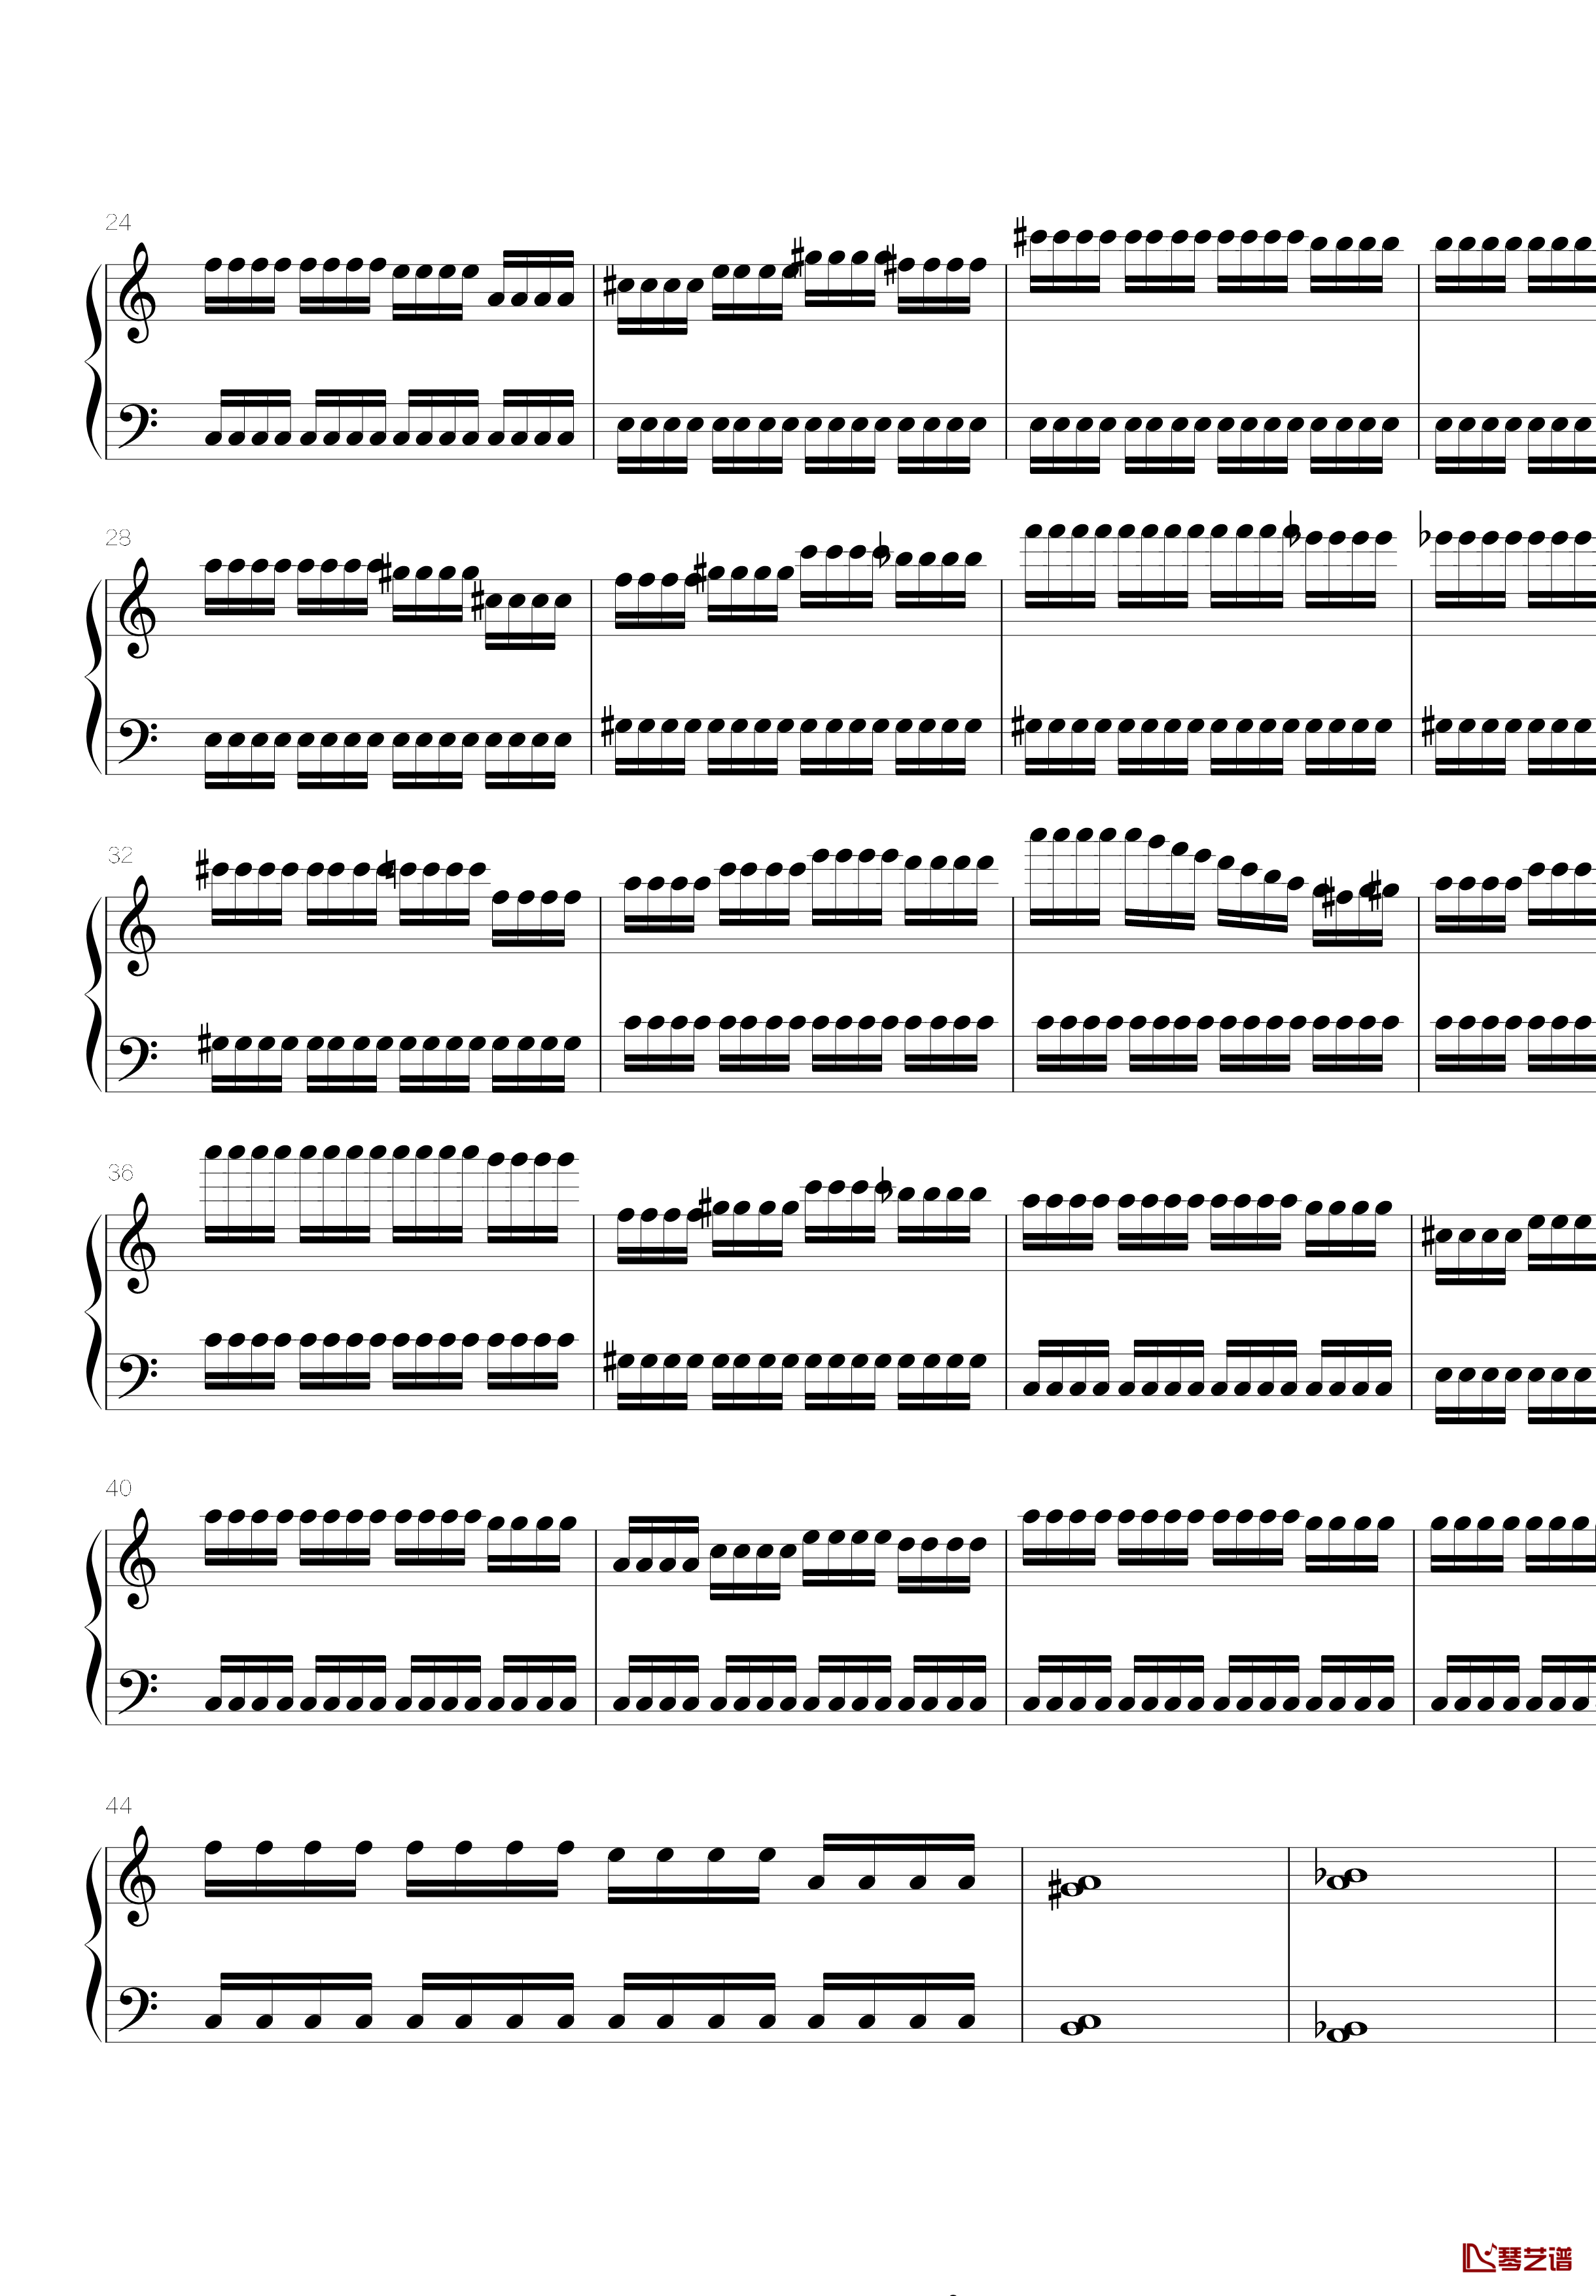 火星练习曲Op.2 No.5钢琴谱-火星先生2